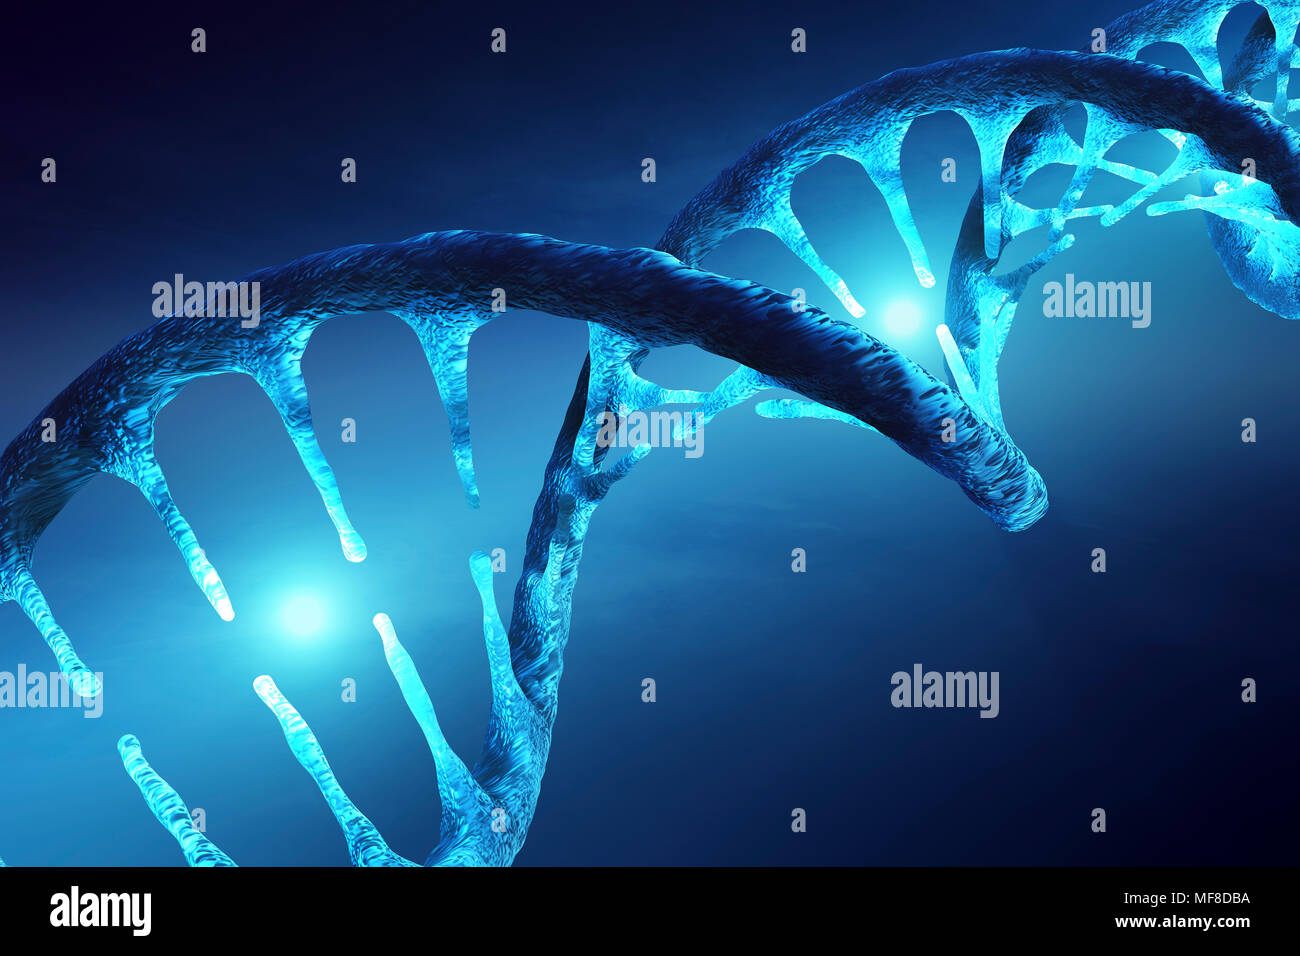 Immagine concettuale della struttura del DNA con molecole illuminato che illustra la trasformazione genetica, manipolazione o modifica. 3D rendering artwork Foto Stock